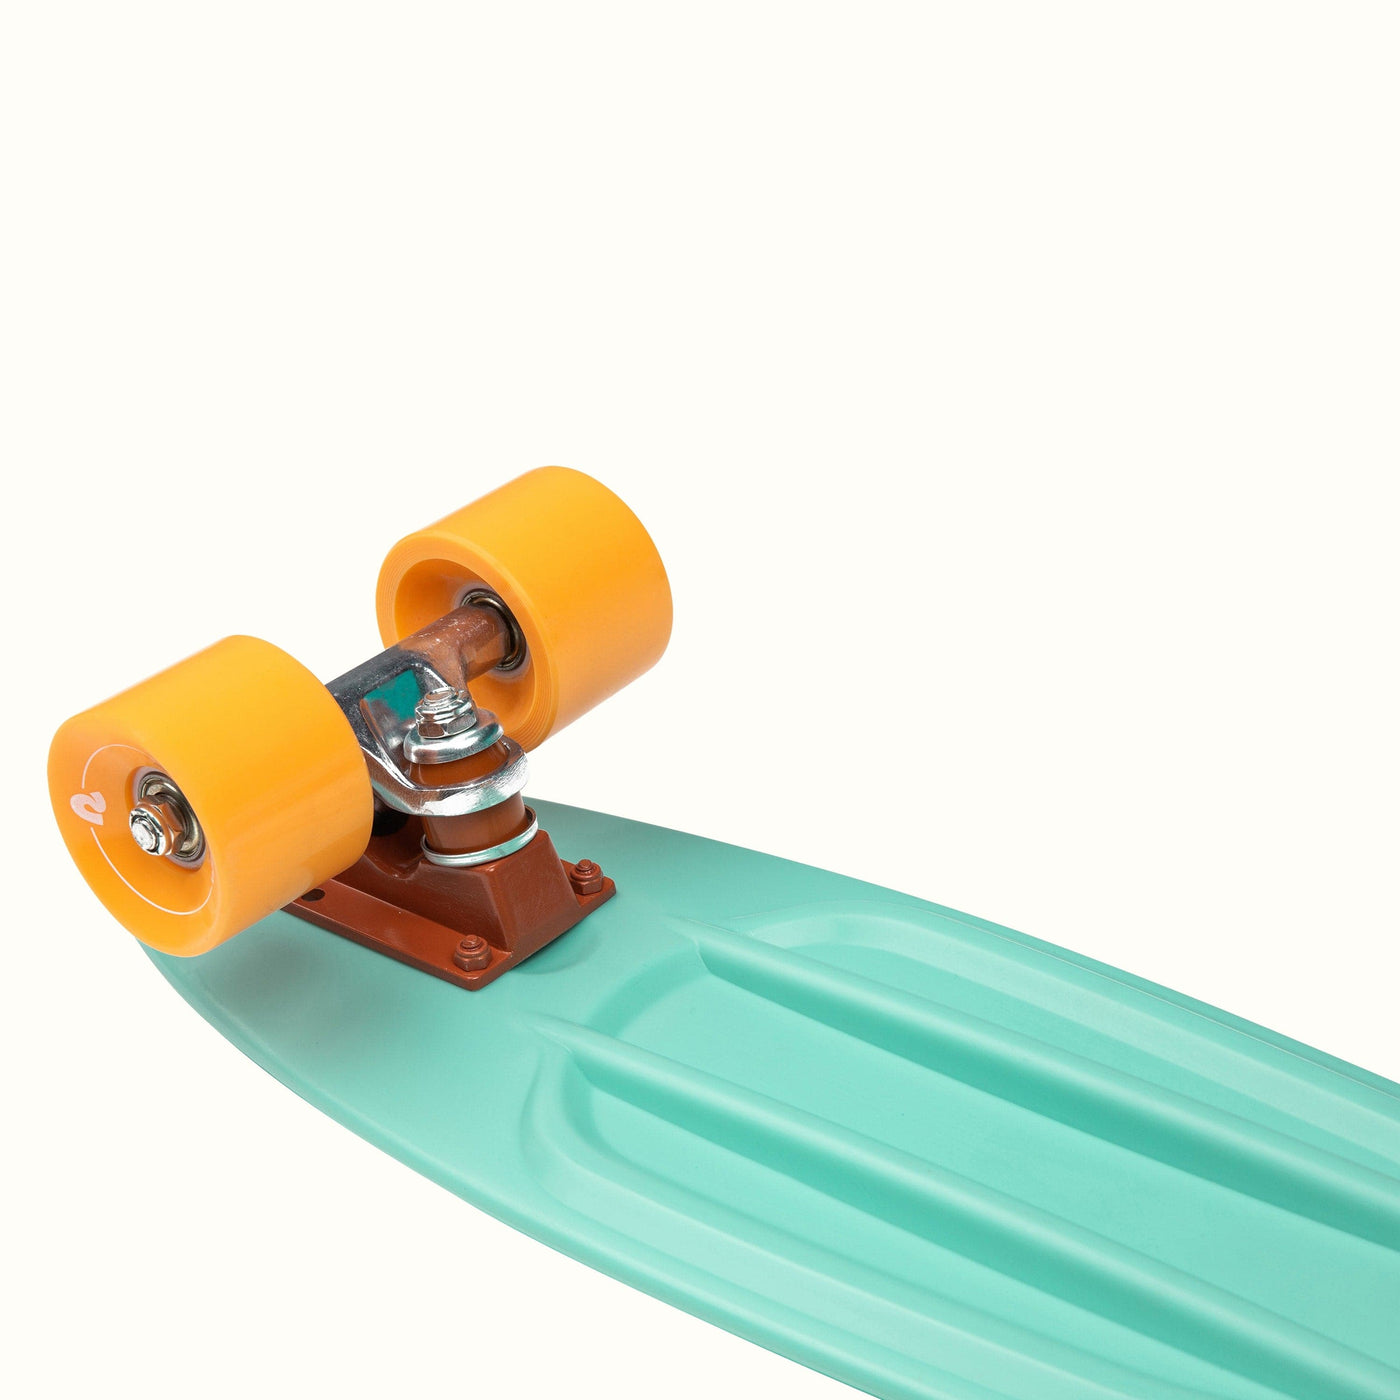 Quip Mini Cruiser Skateboard | Seafoam